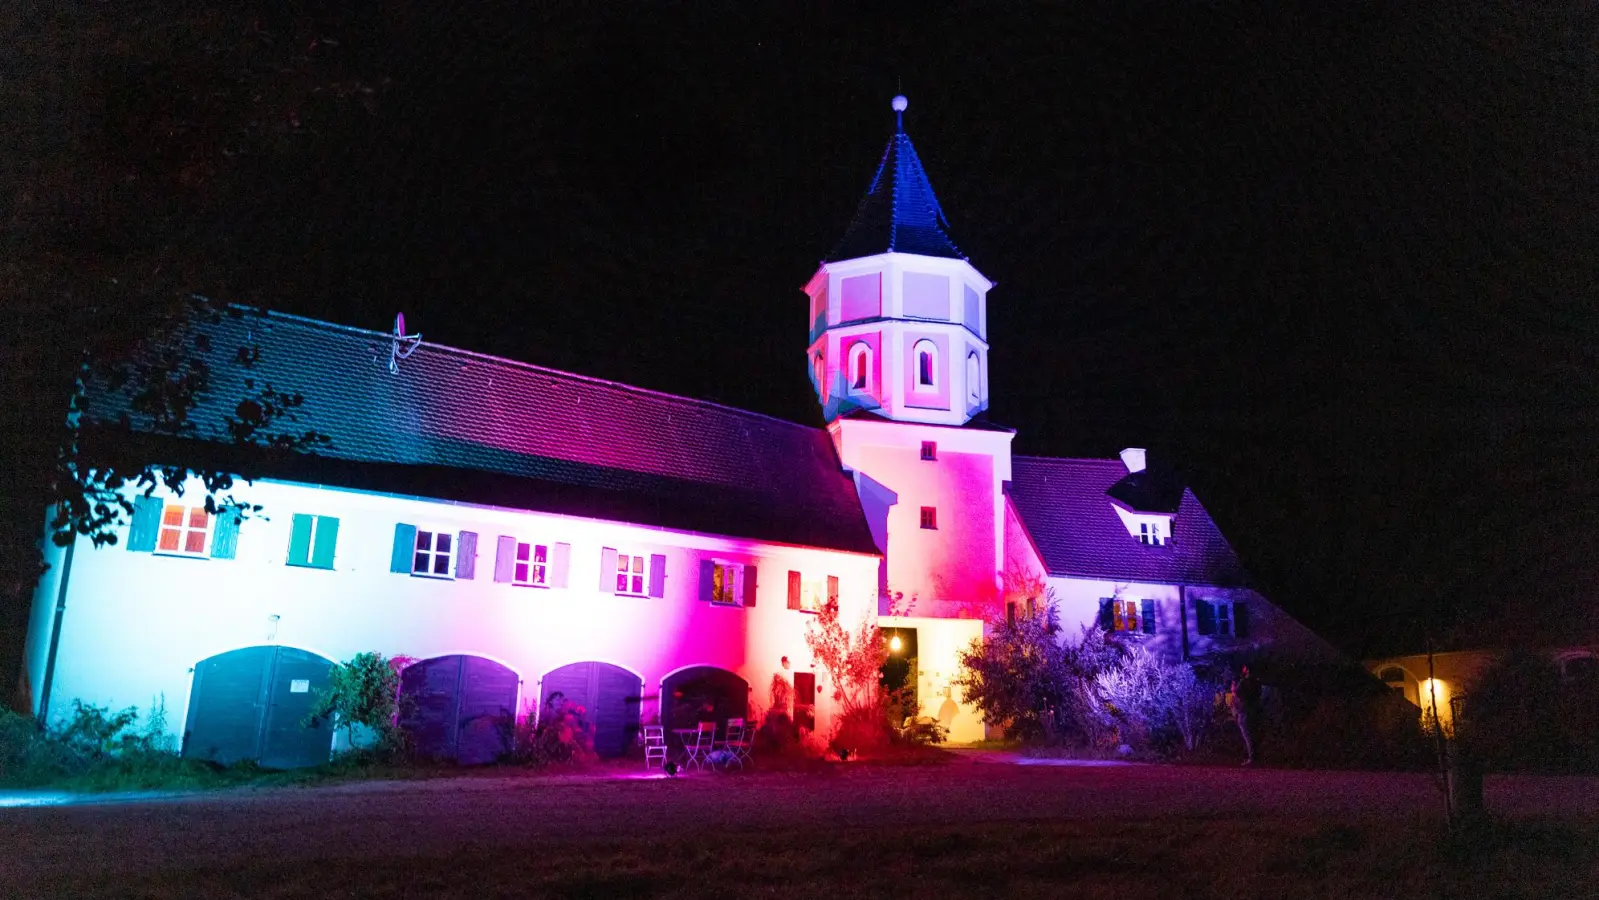 <b>In Regenbogenfarben</b>erstrahlen beim Lichterfest in Blumenthal die Gebäude im Innenhof des historischen Schlossensembles.  (Foto: Benedikt Frommer)